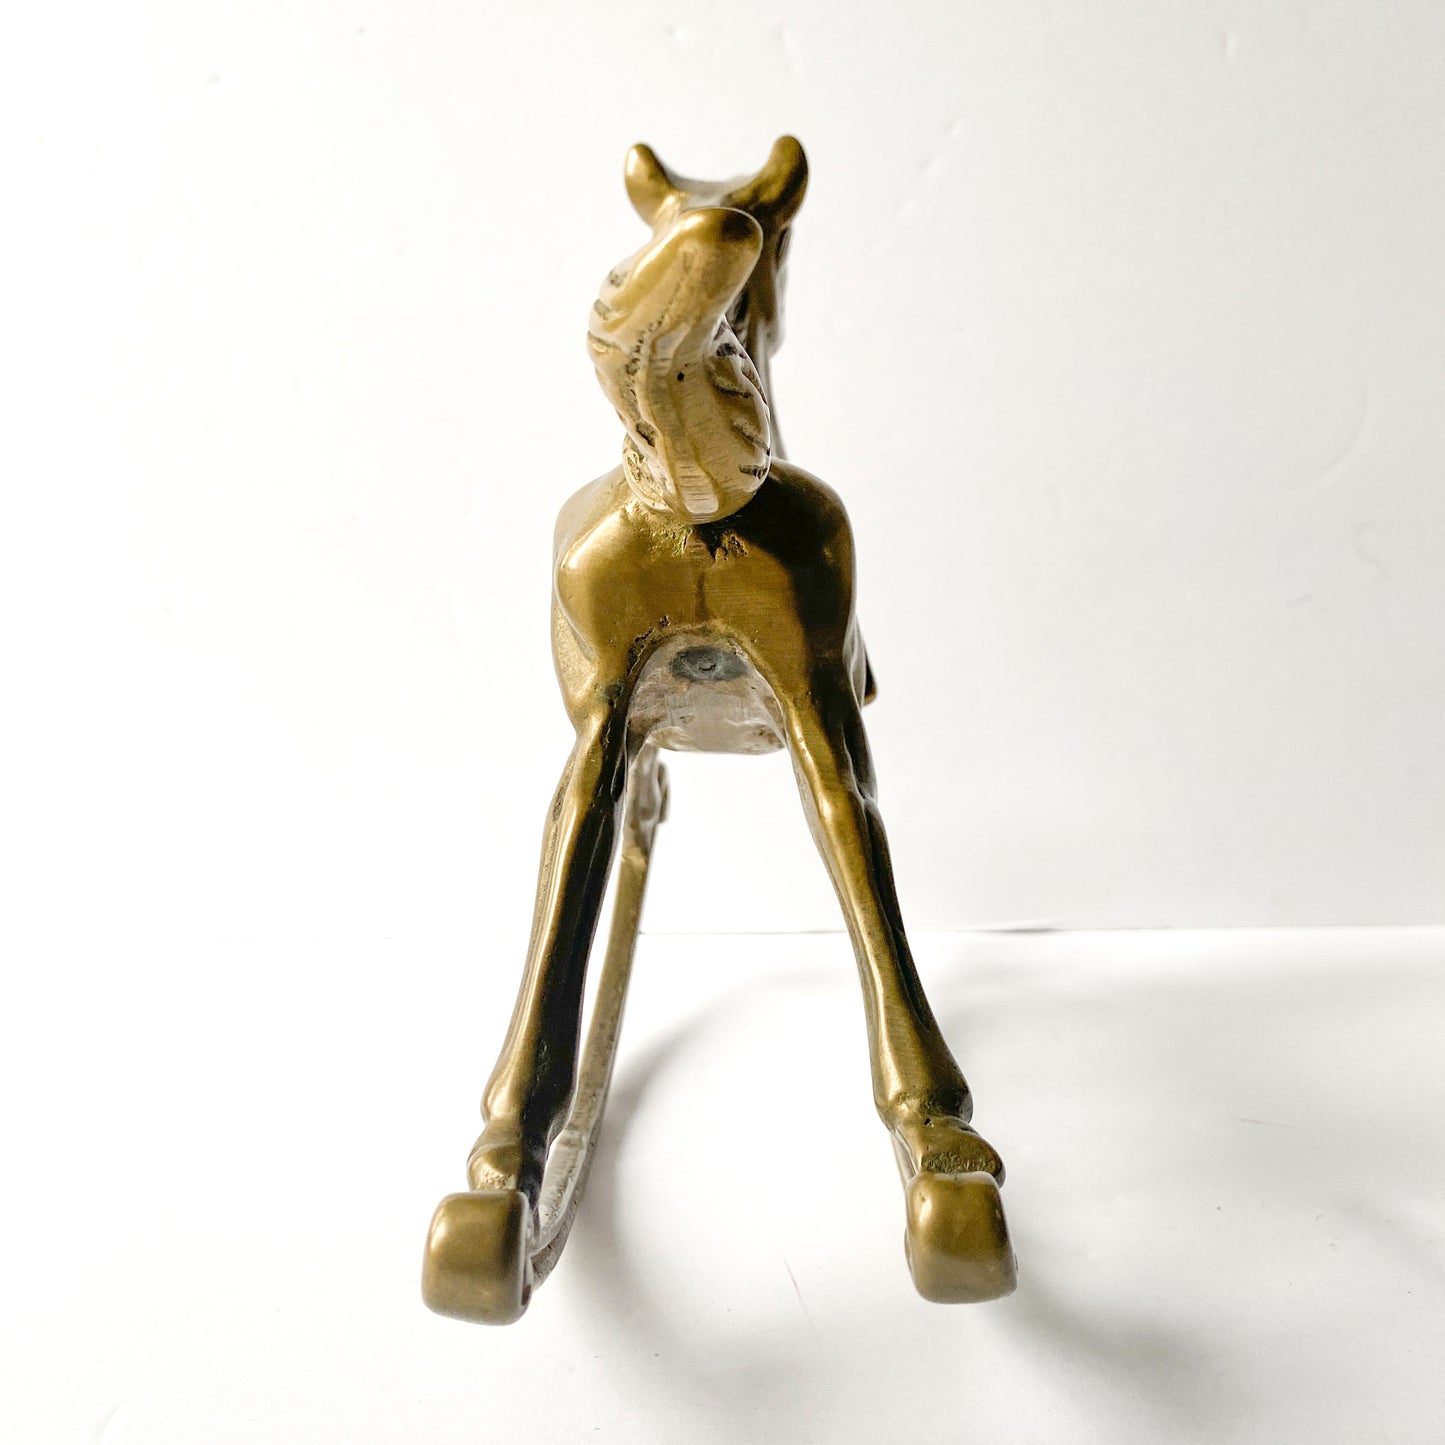 Vintage brass rocking horse sculpture